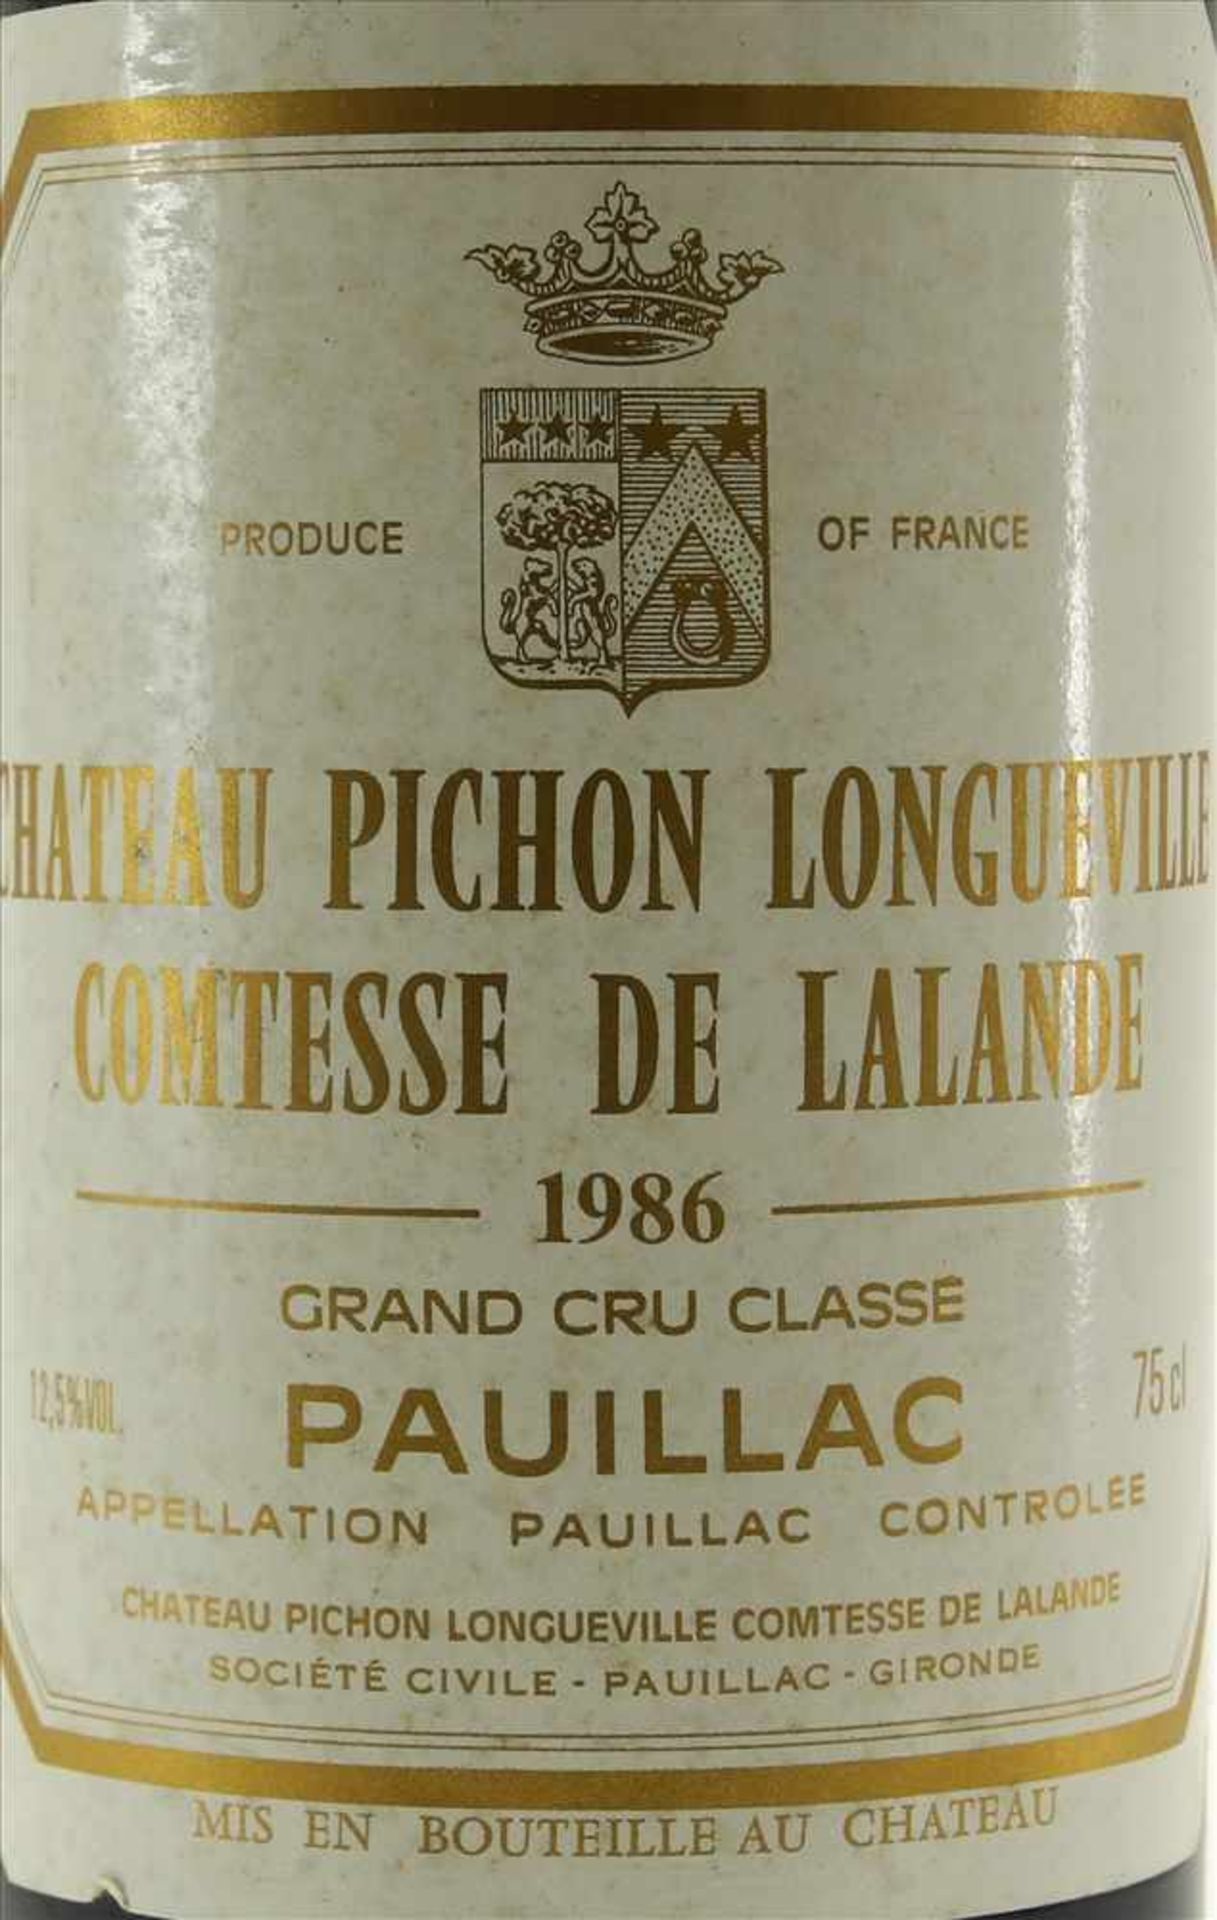 Chateau Pichon Longueville 1986Comtesse de Lalande 1986. Grand Cru Classé. 0,75 Liter Flasche. - Image 2 of 3